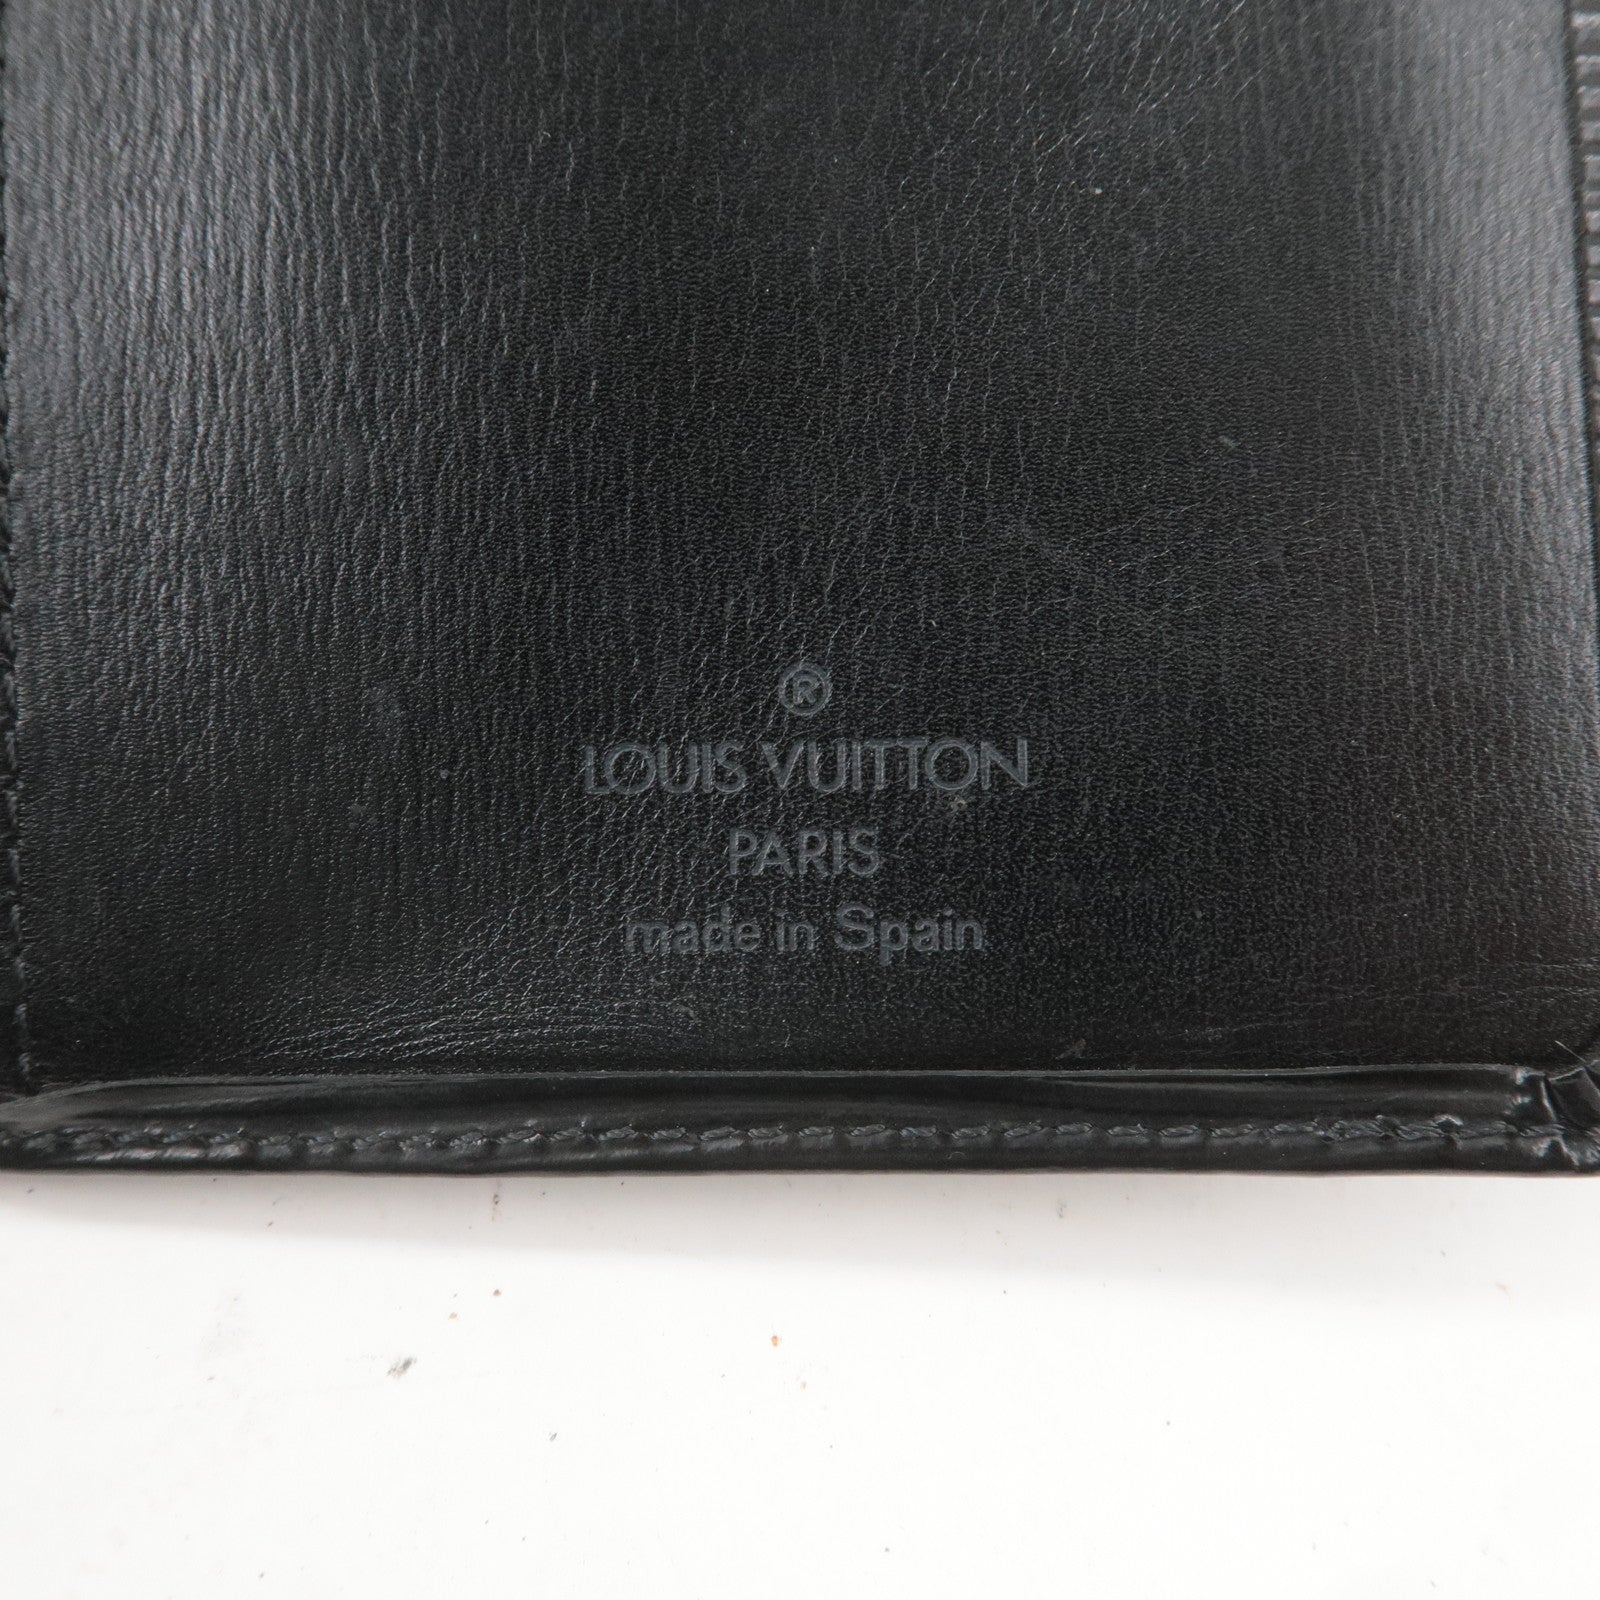 Wallet help : r/Louisvuitton